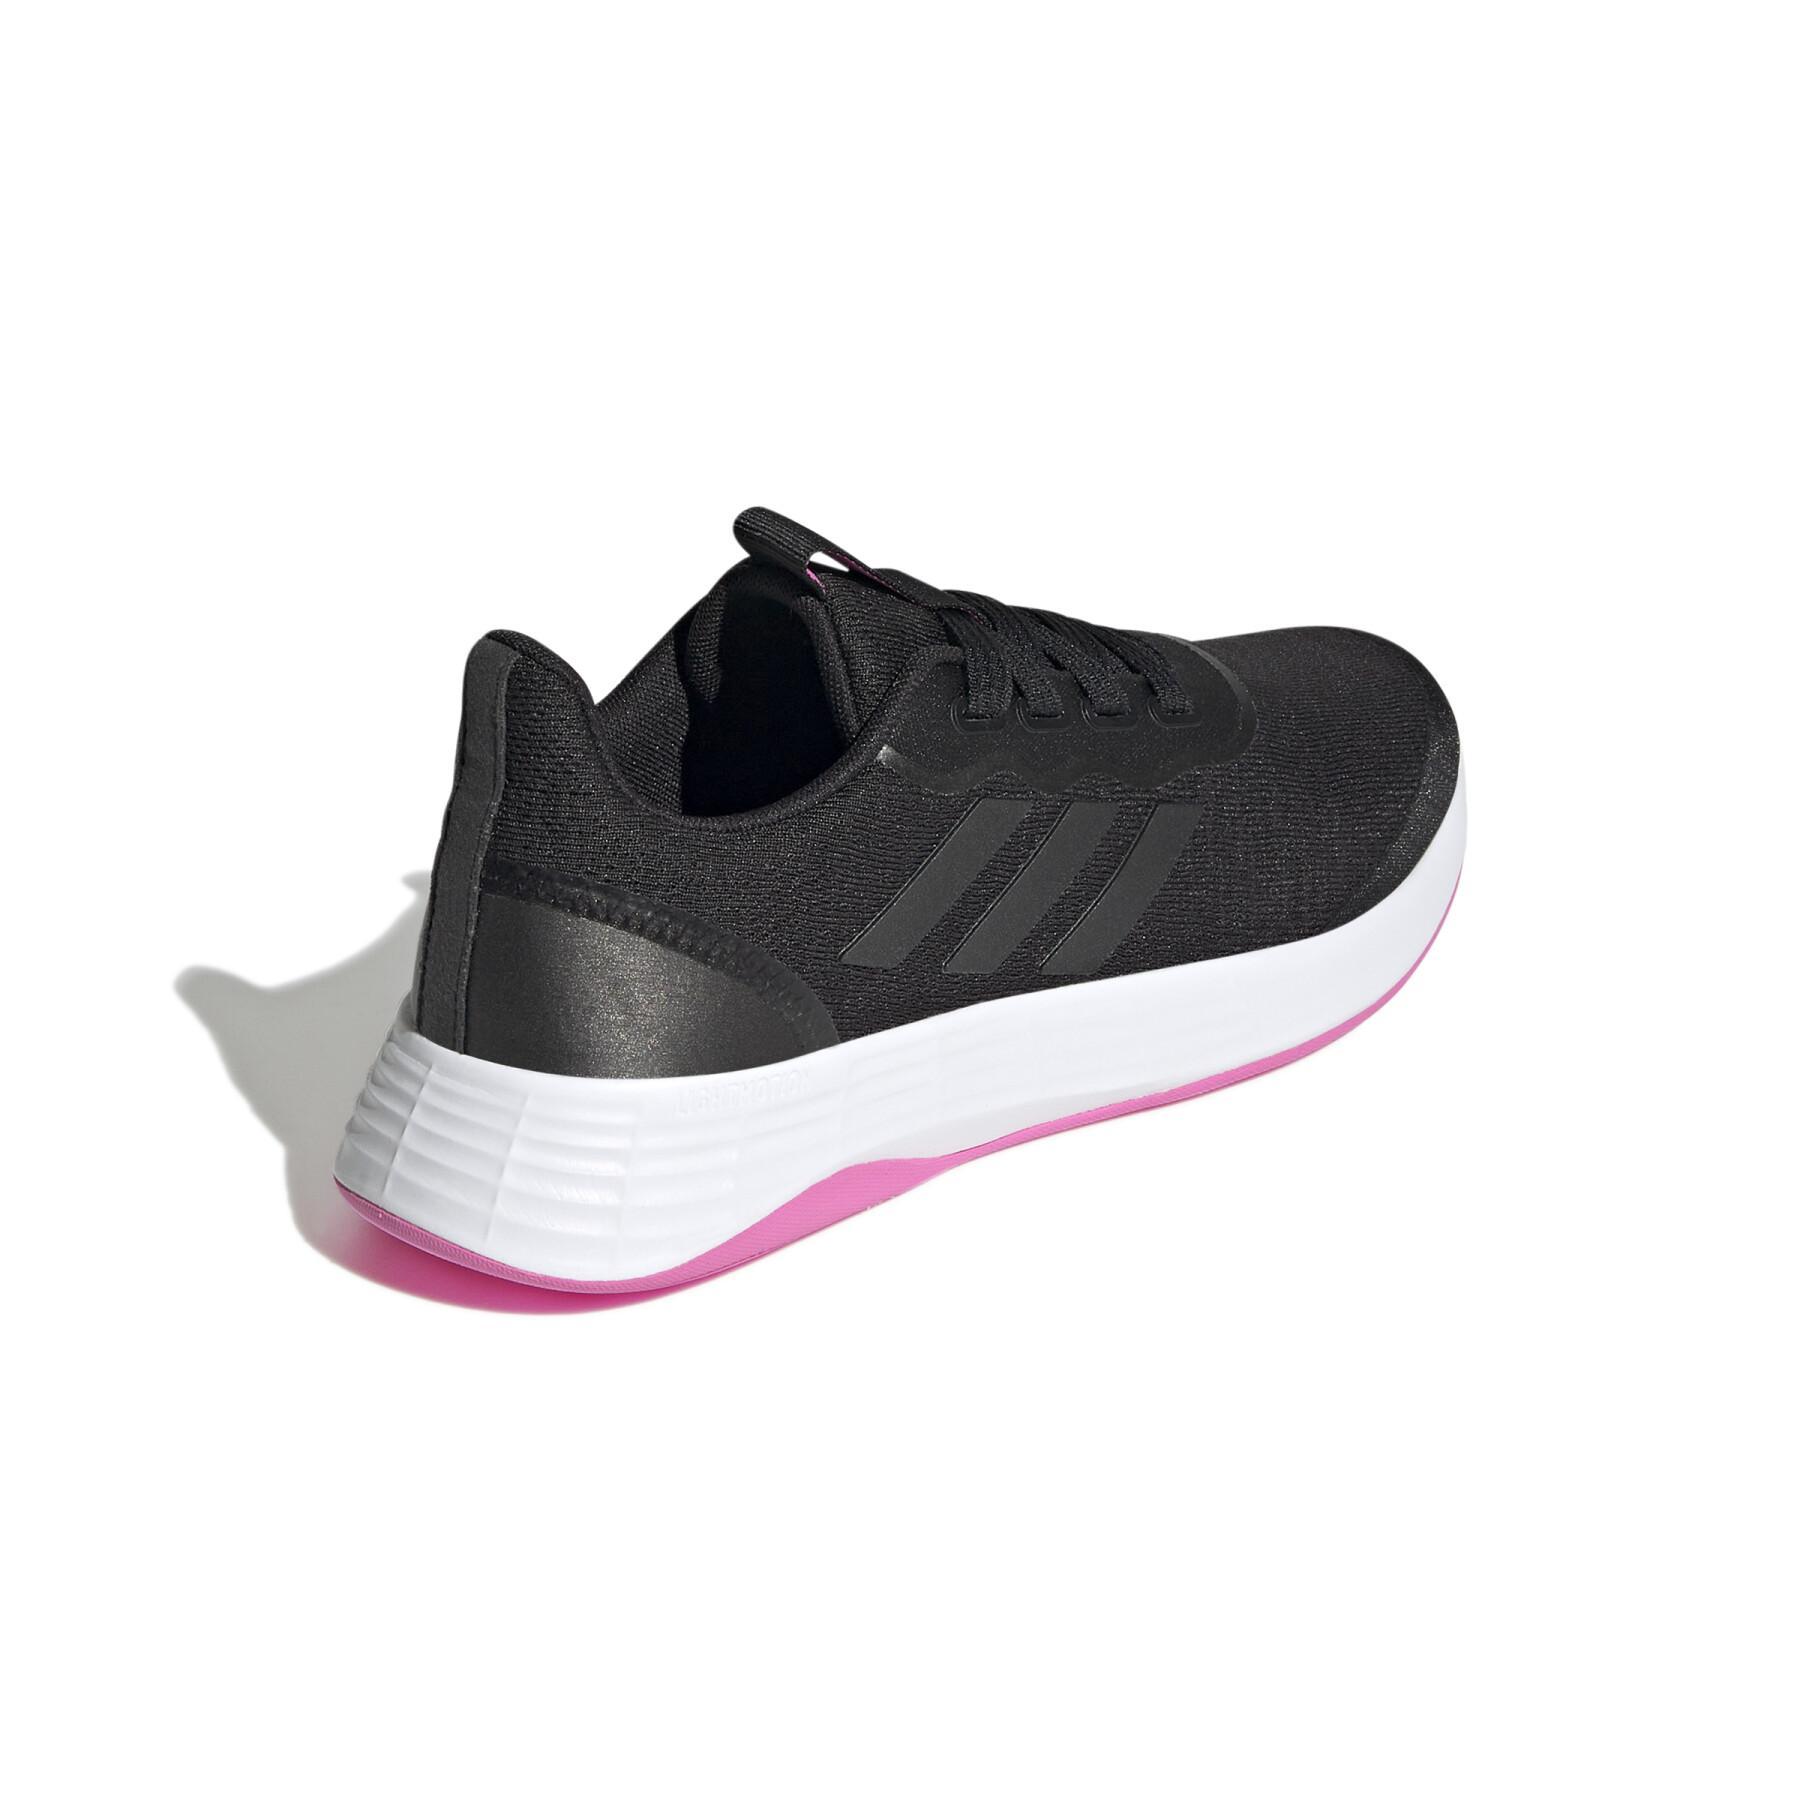 Damen-Laufschuhe adidas QT Racer Sport